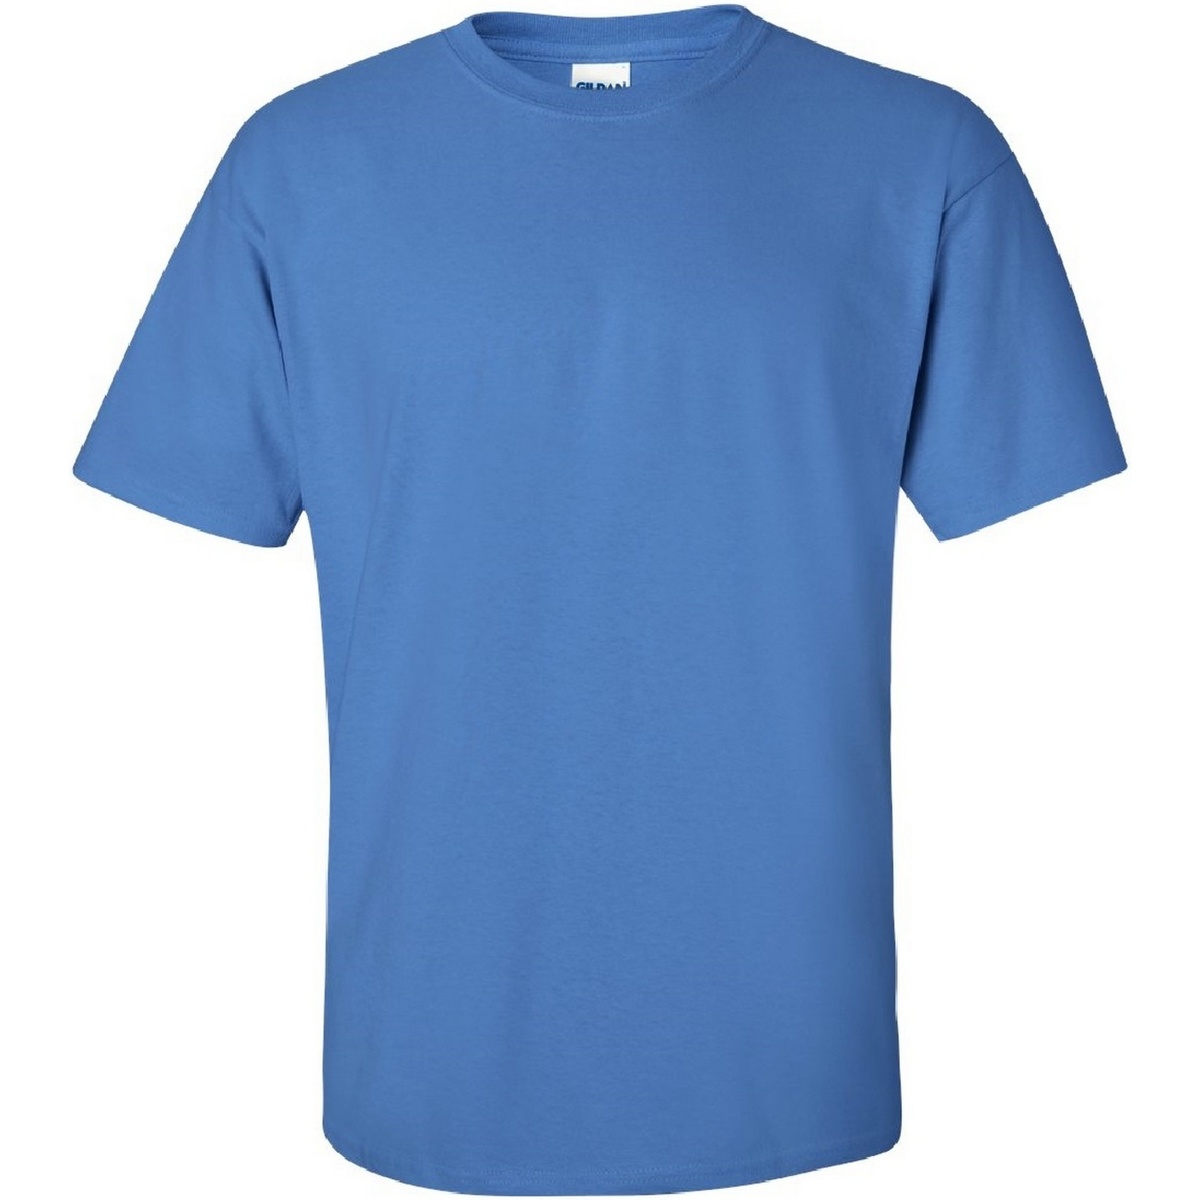 Vêtements Homme T-shirts manches courtes Gildan Ultra Multicolore